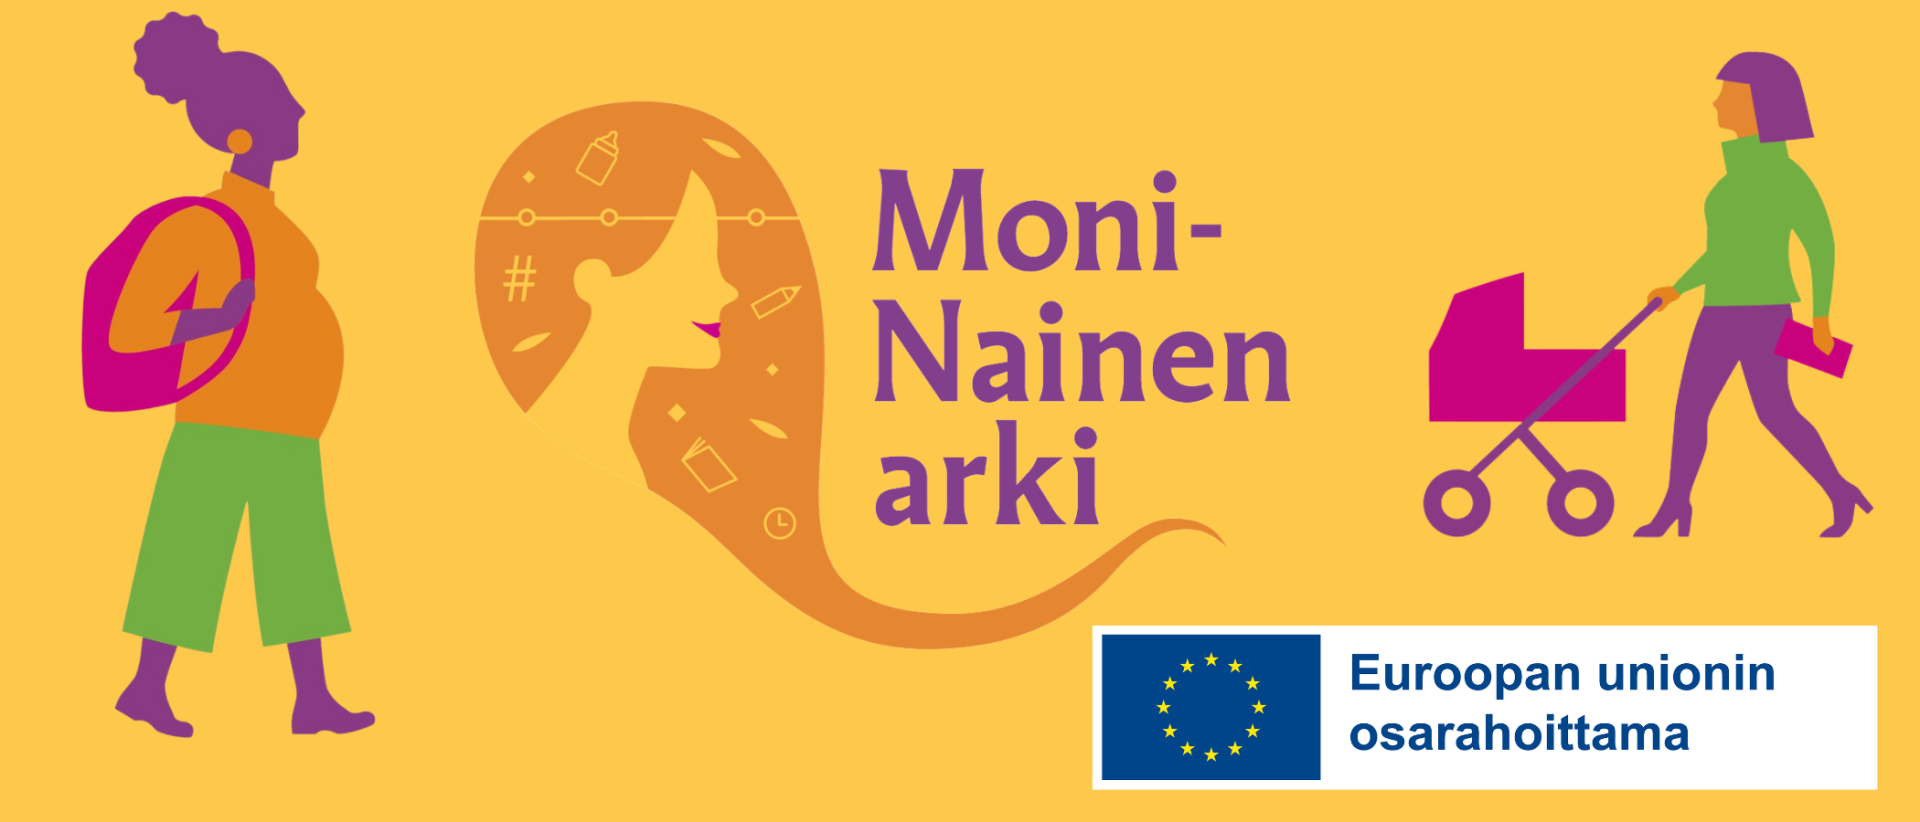 Piirroskuvissa reppu olalla kävelevä nainen, naisen kasvot ja lastenvaunuja työntävä nainen sekä teksti moninainen arki ja EU:n logo